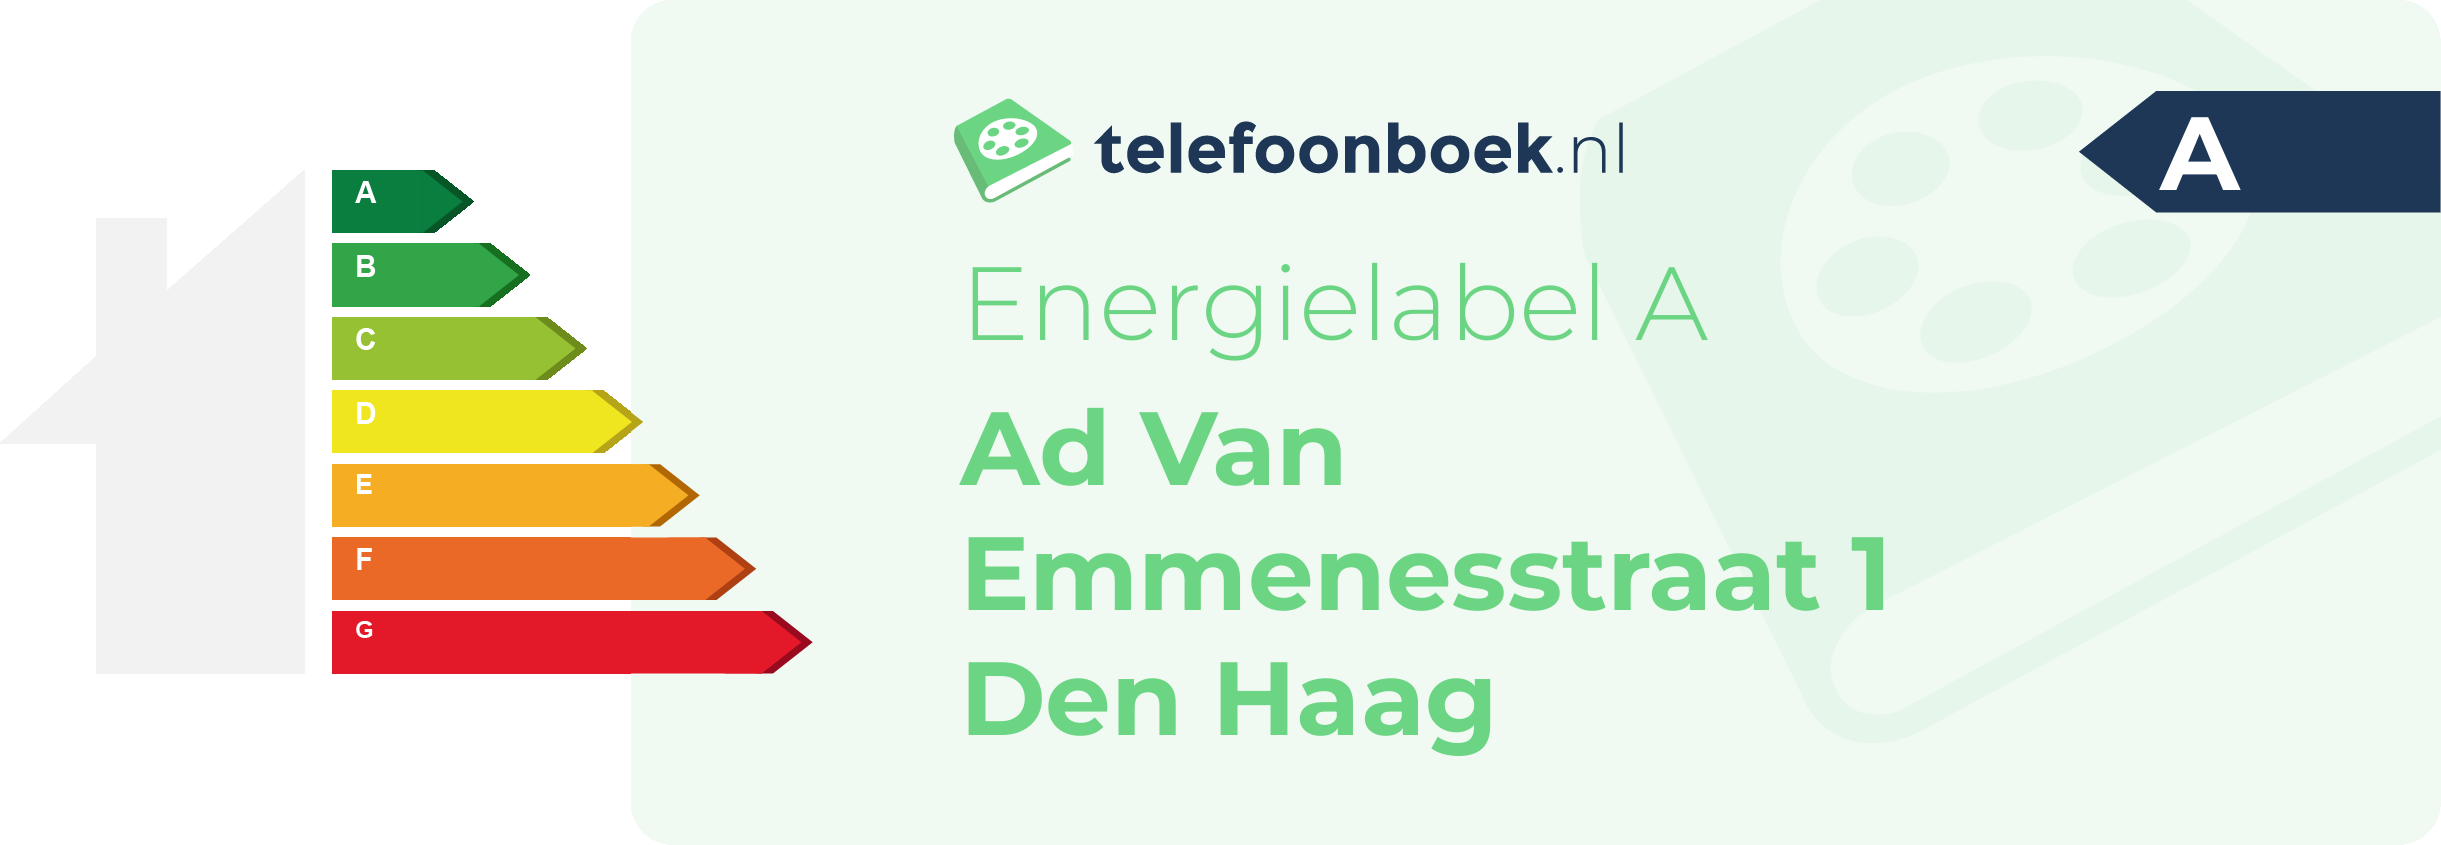 Energielabel Ad Van Emmenesstraat 1 Den Haag